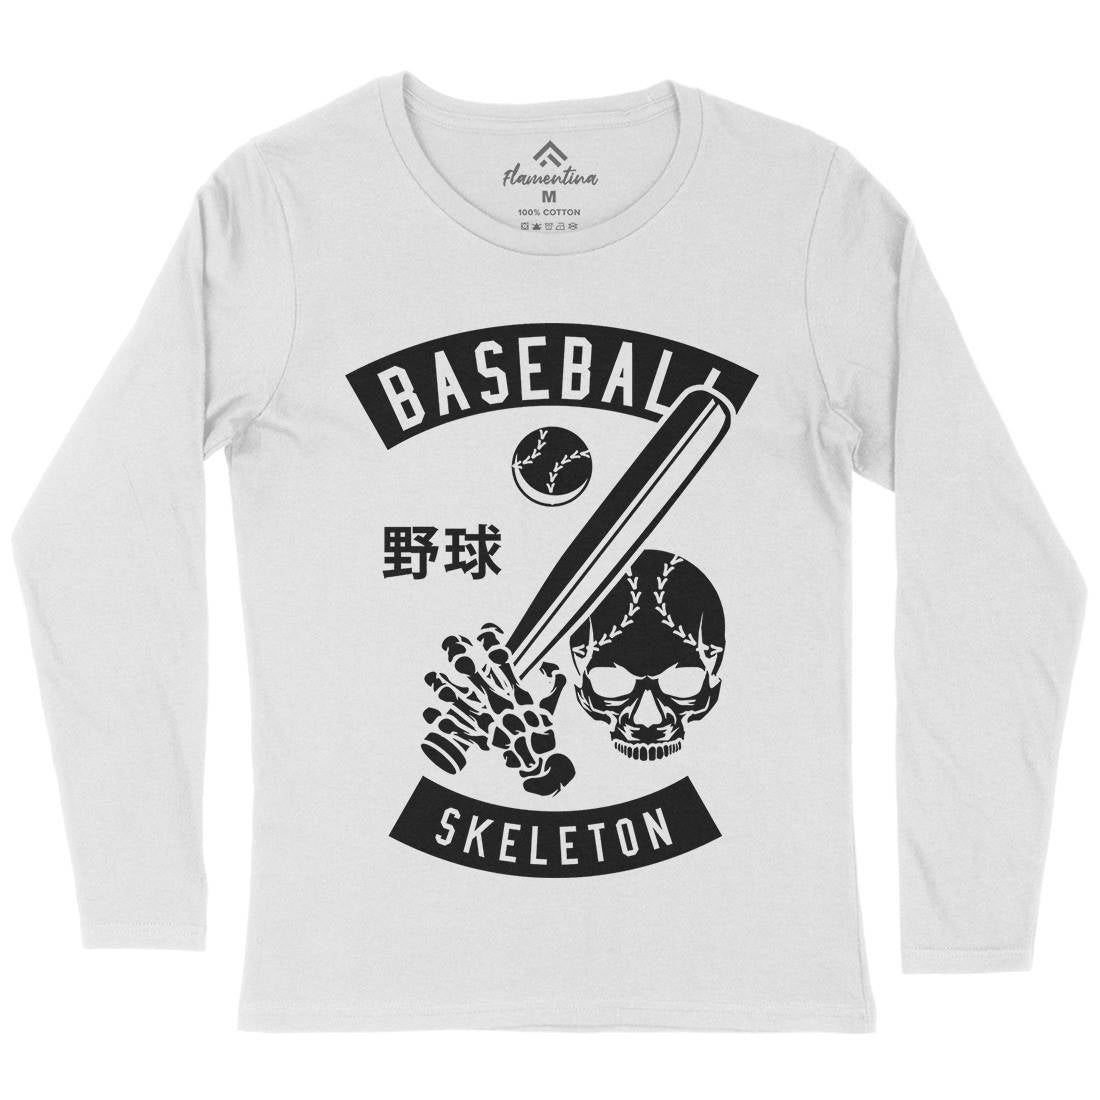 Baseball Skeleton Womens Long Sleeve T-Shirt Sport B489